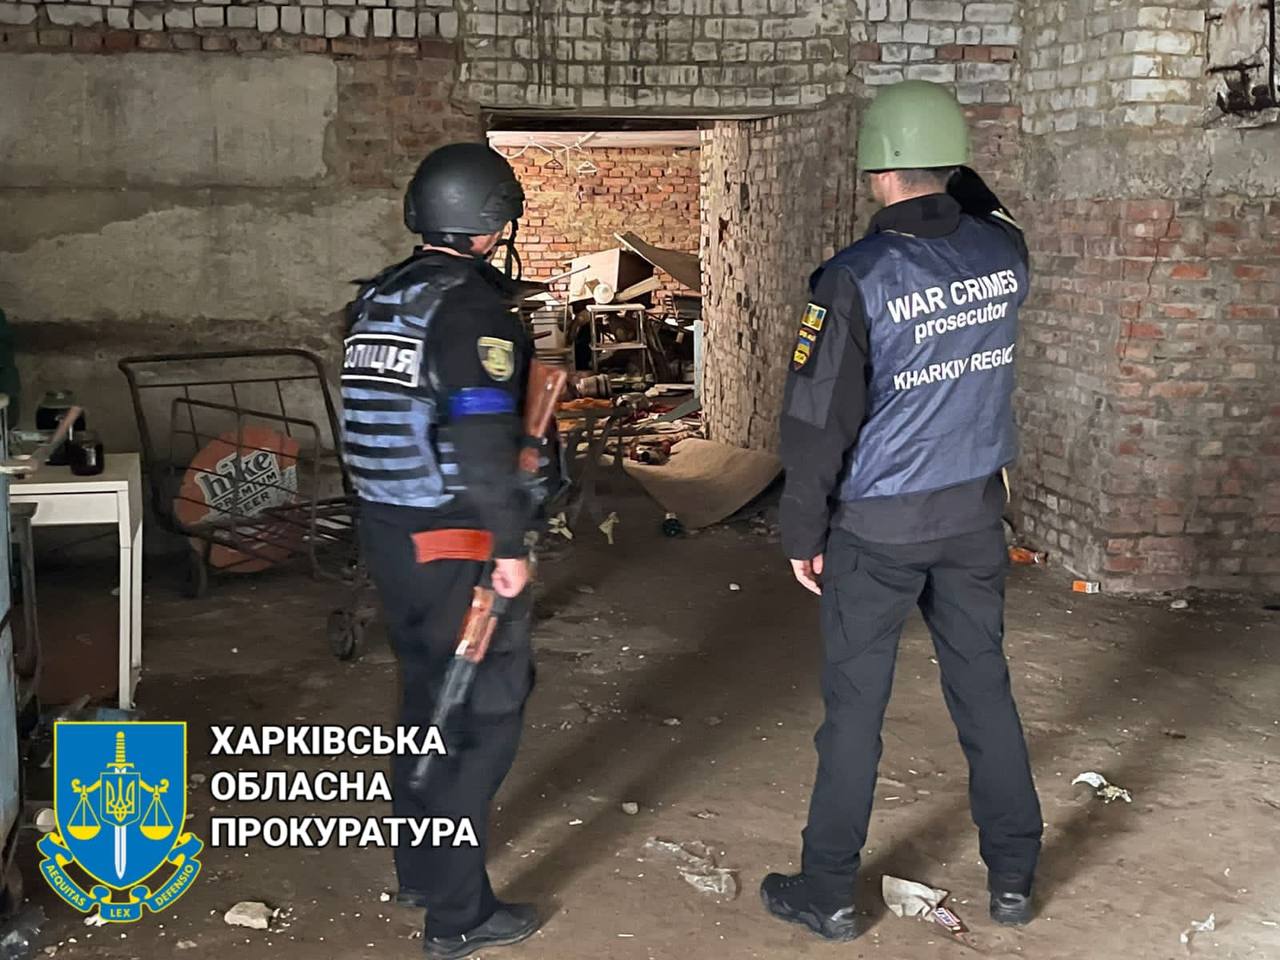 На Харьковщине обнаружили больше застенков, чем в любом регионе Украины — ИС